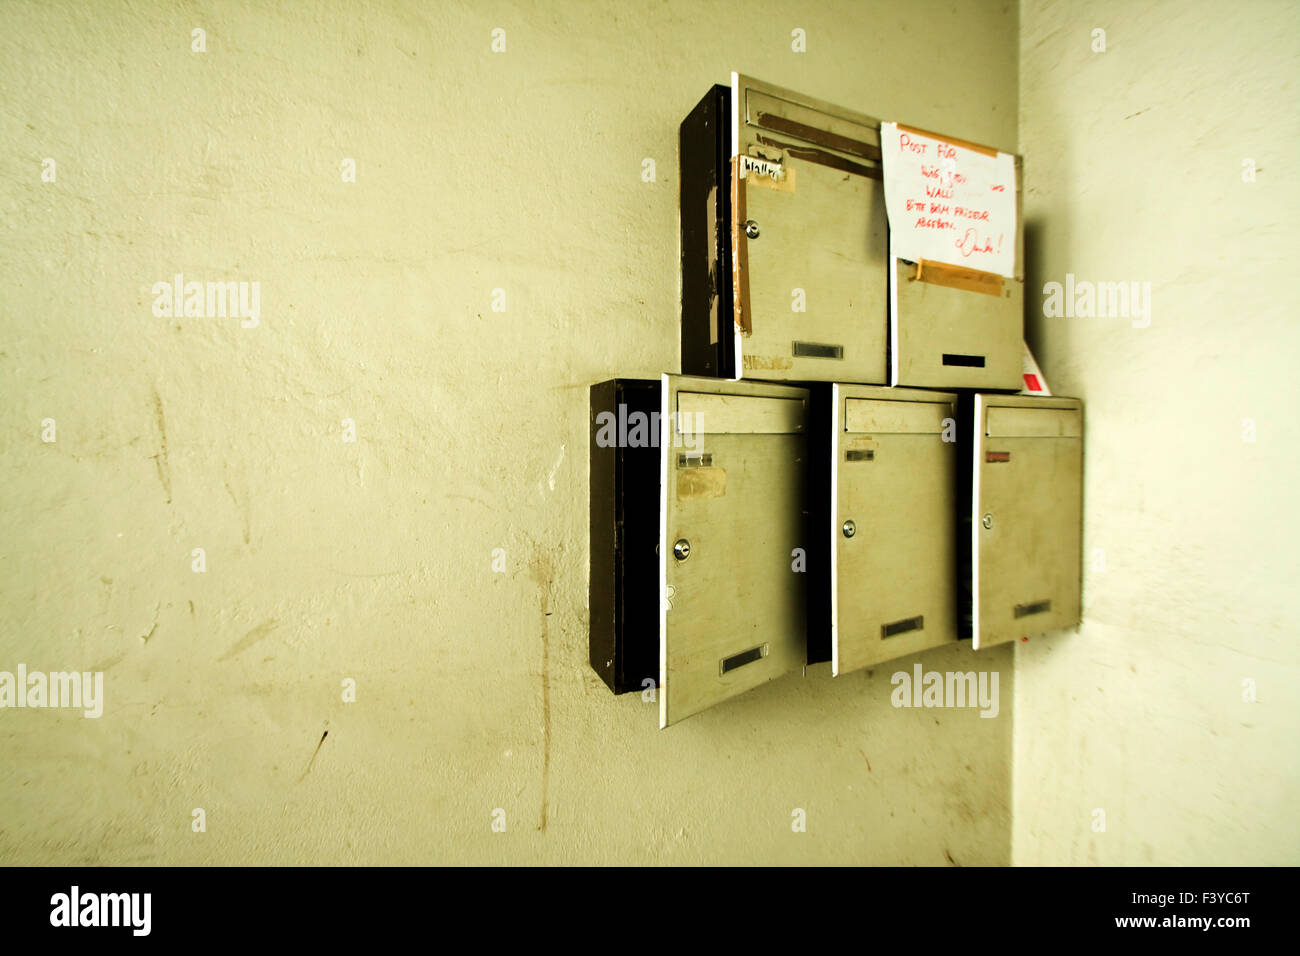 postbox Stock Photo